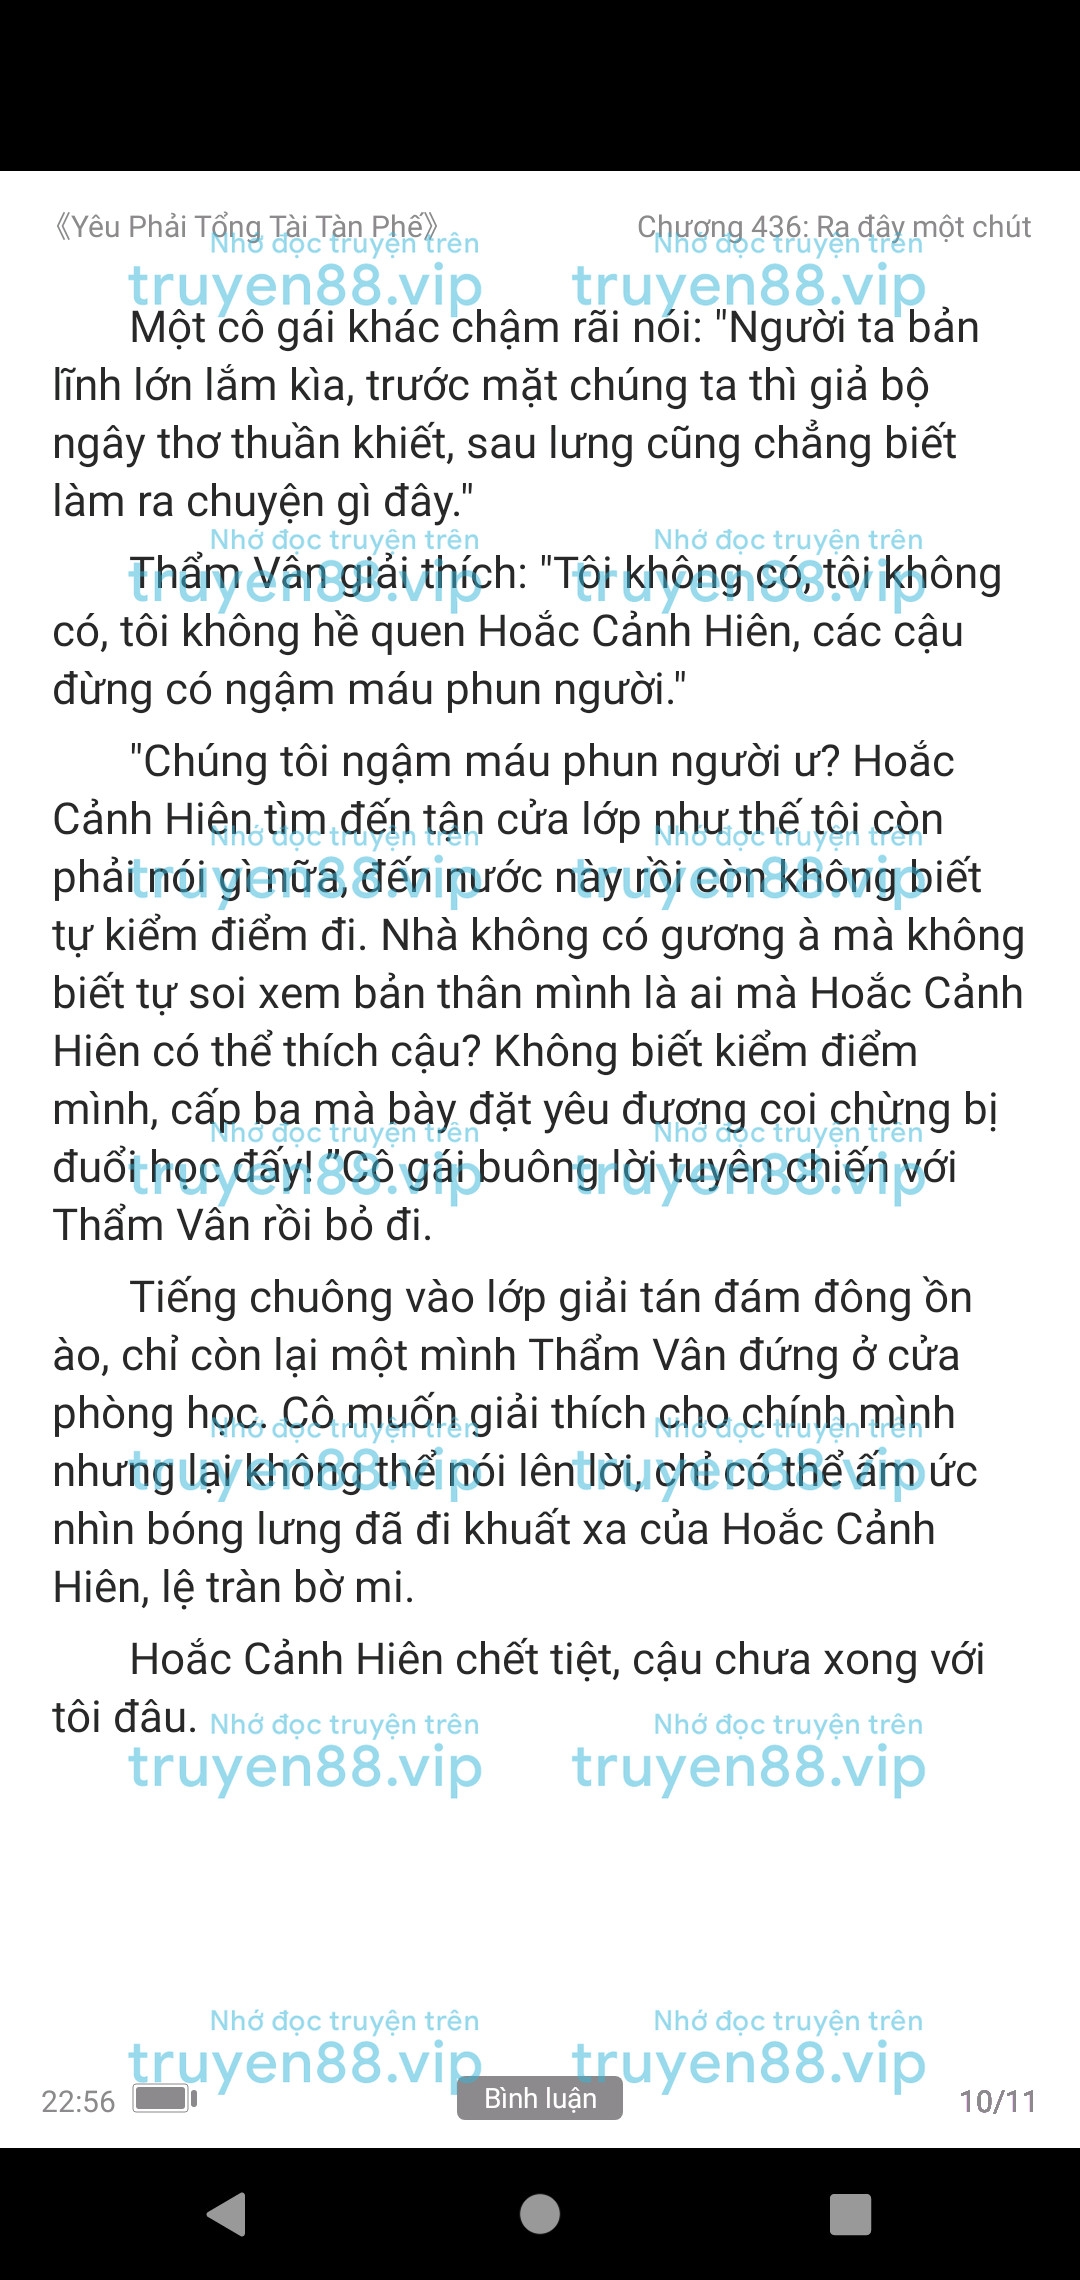 yeu-phai-tong-tai-tan-phe-429-0